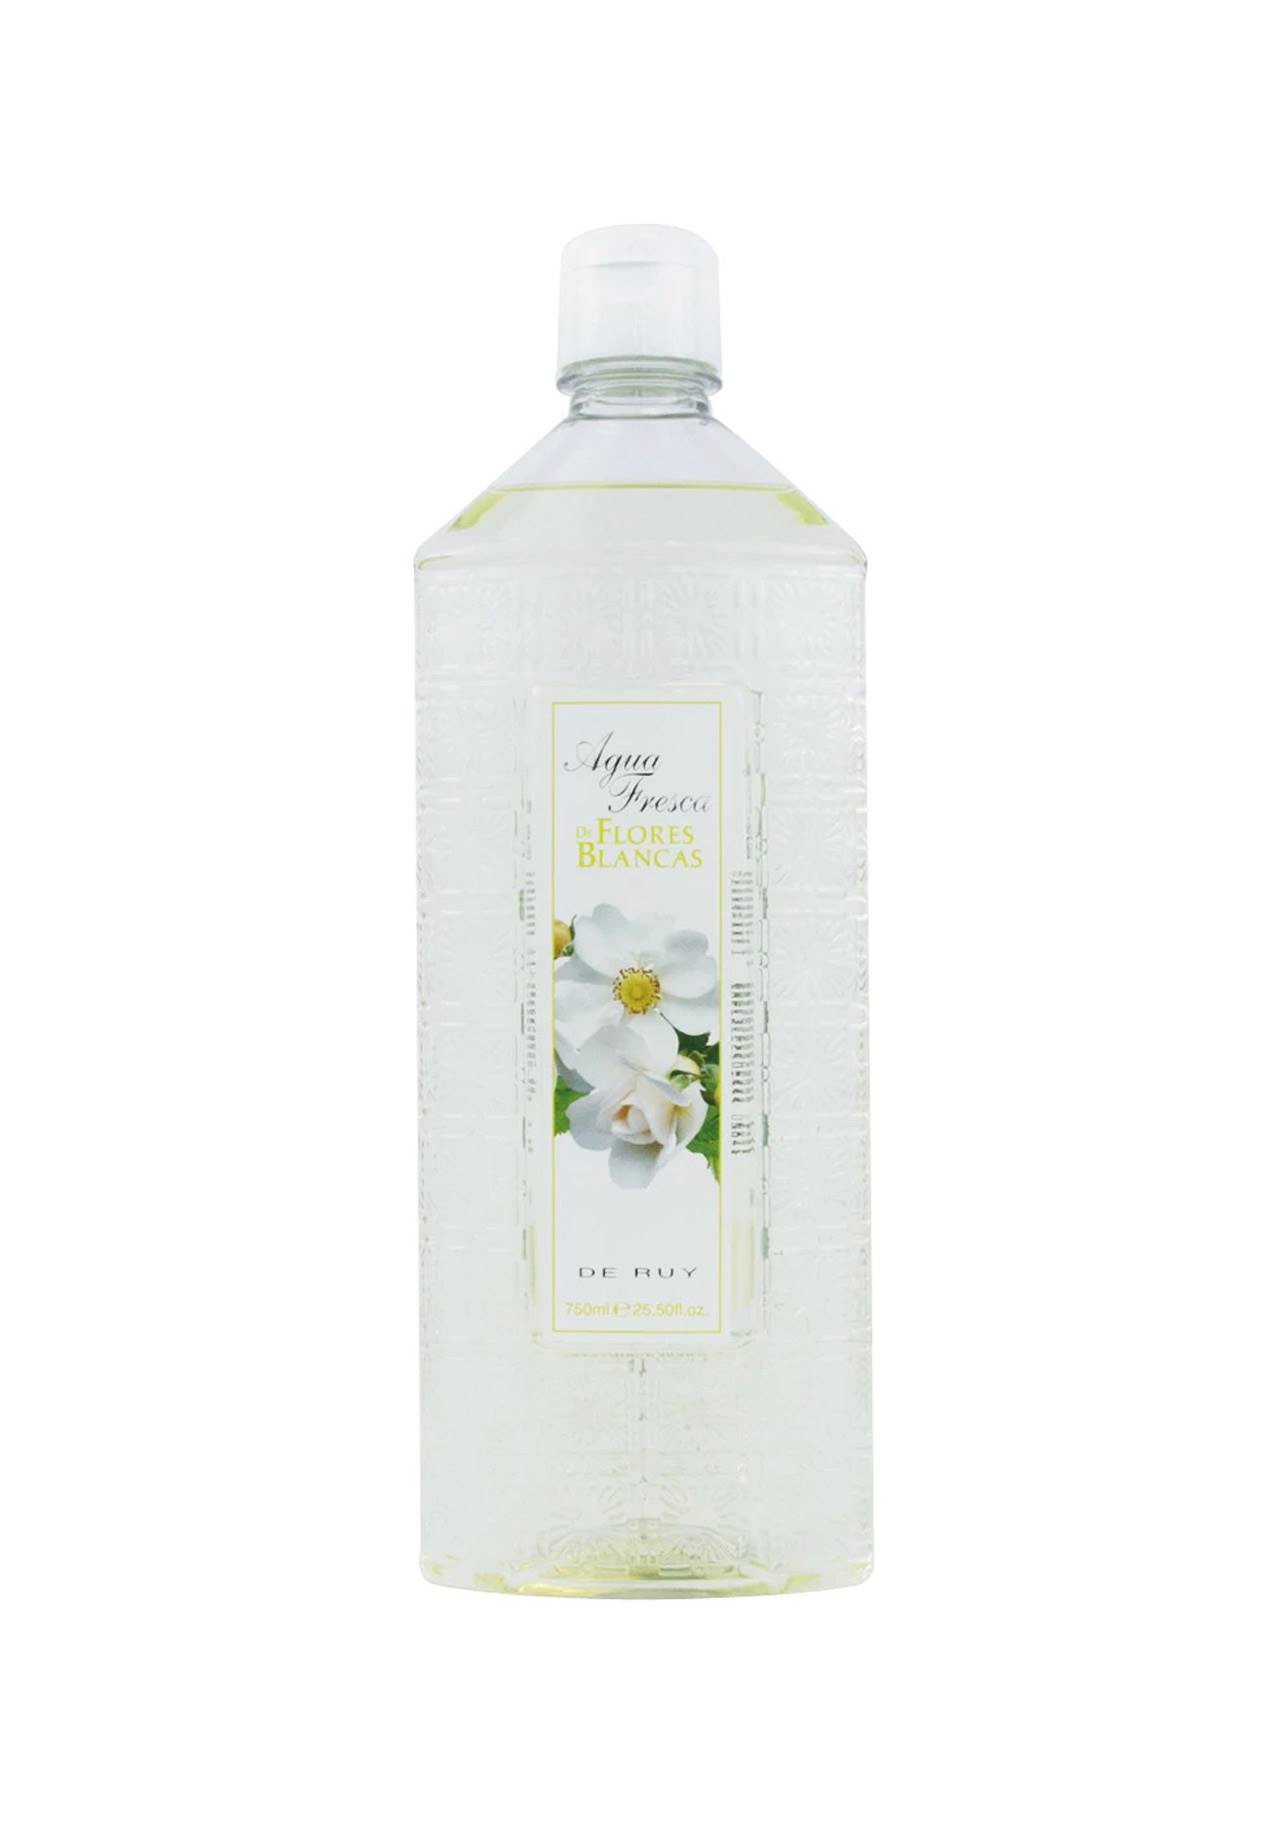 perfumes baratos que huelen a limpio Eau de Toilette Agua Fresca de Flores Blancas de Ruy, 8,90€